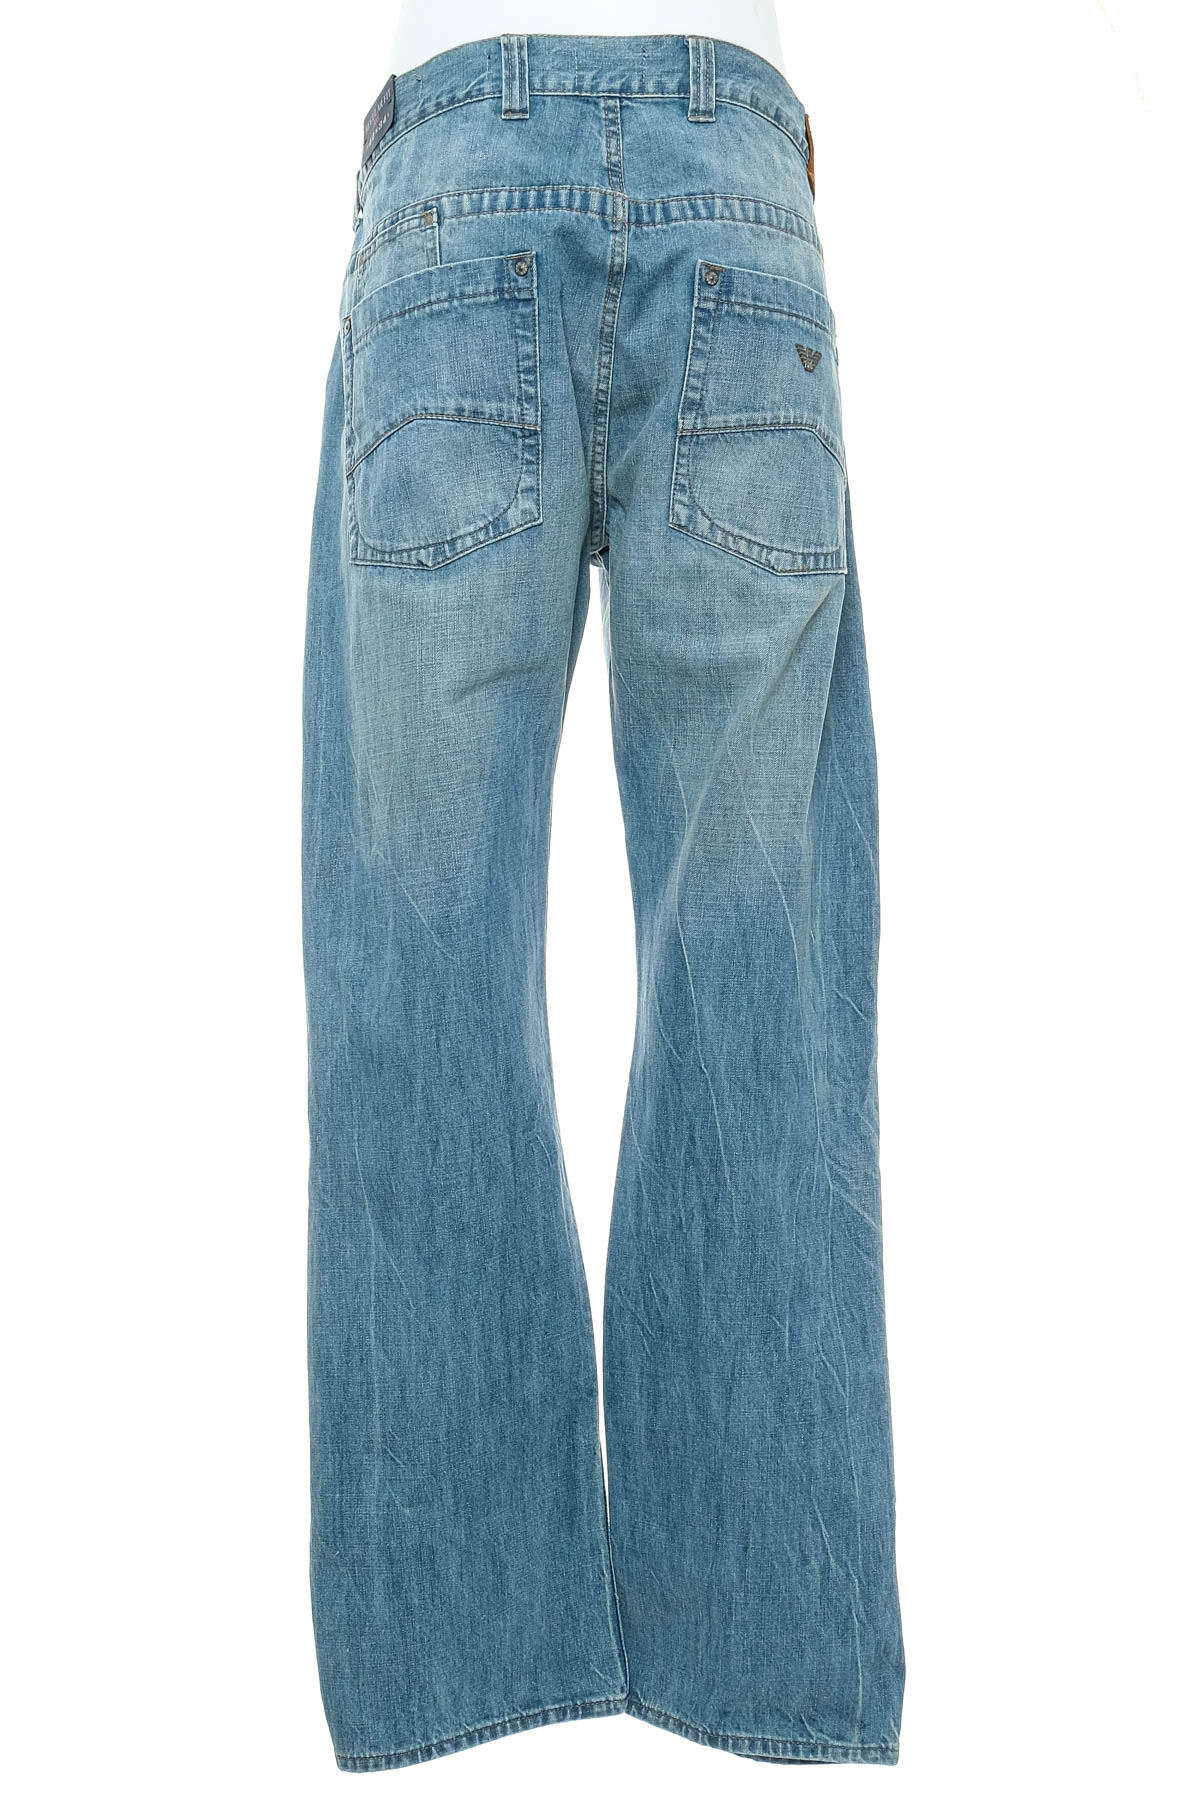 Jeans pentru bărbăți - Armani Jeans - 1